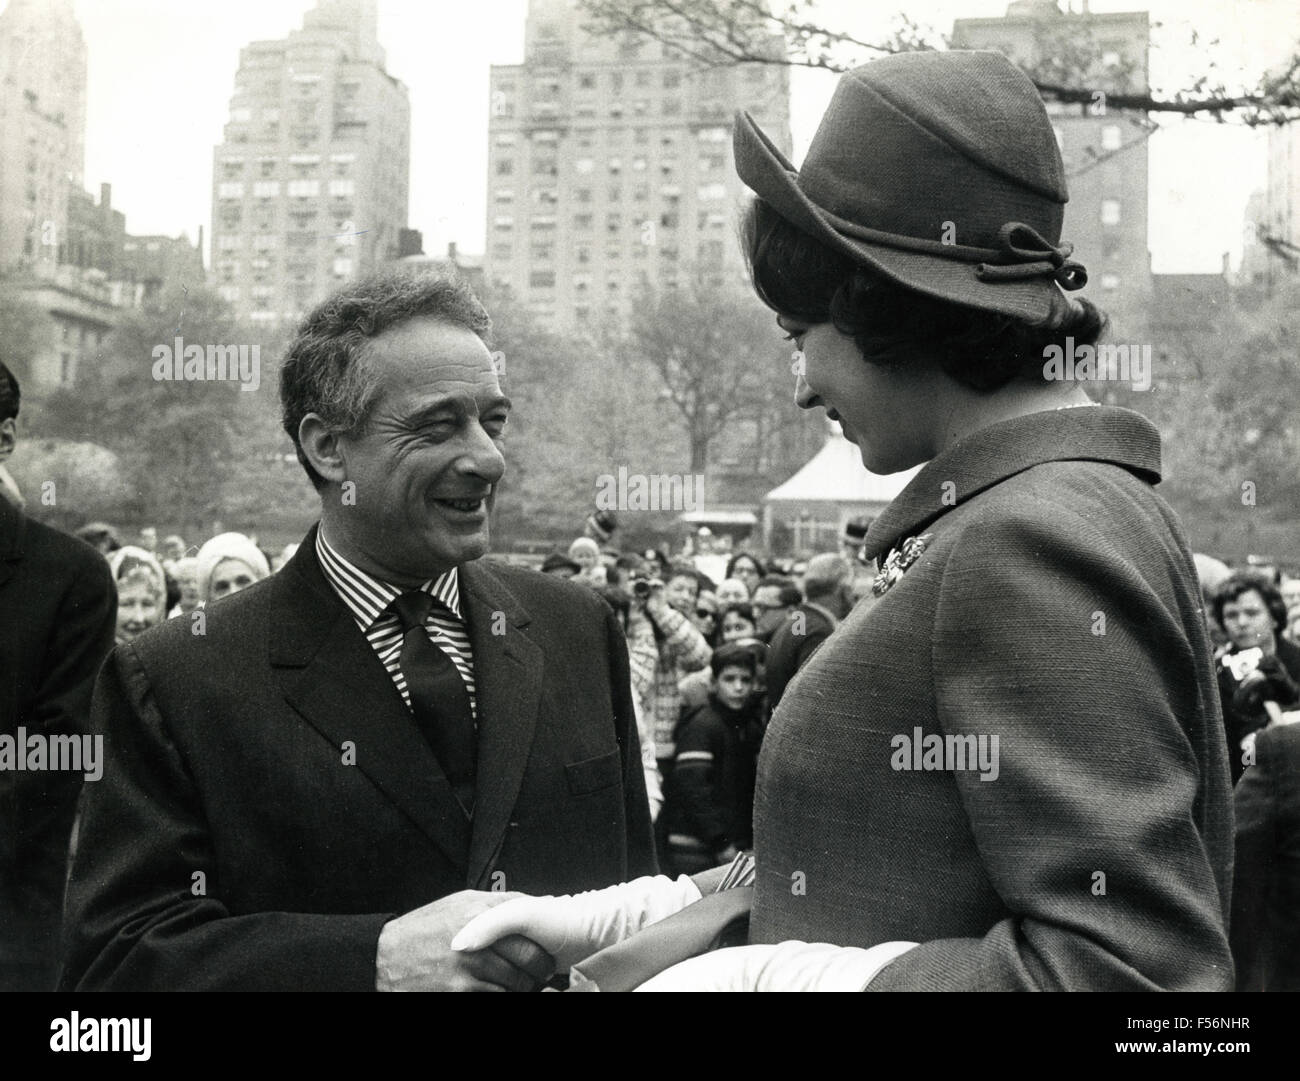 La princesse de Danemark Benedetta répond aux Danois Victor Borge dans Central Park, NY, USA Banque D'Images